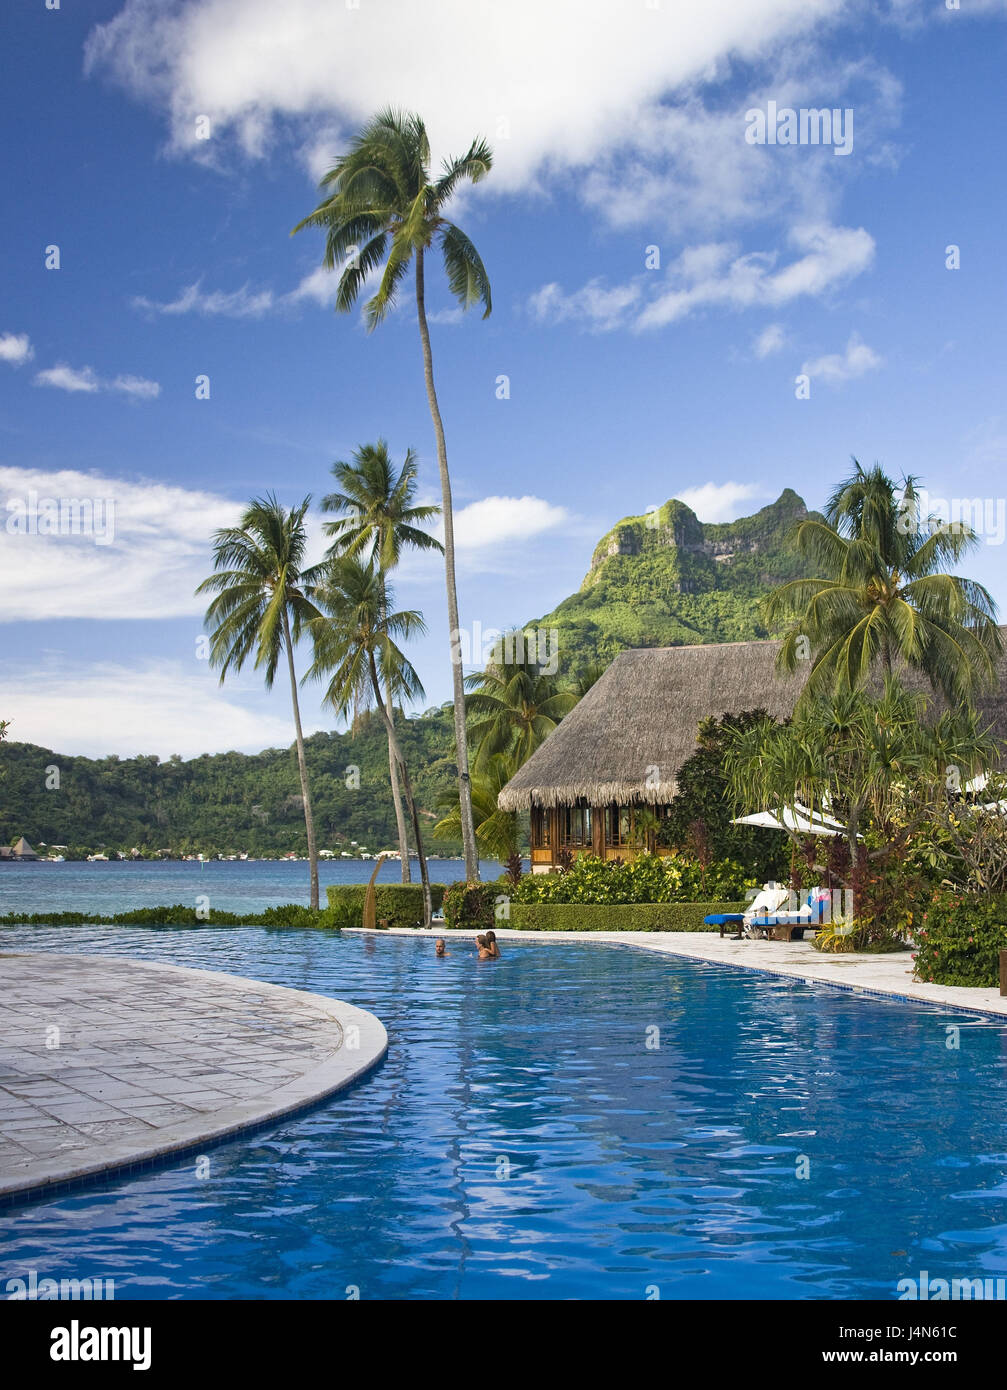 French Polynesia, Bora Bora, Bora Bora Lagoon Resort, Stock Photo